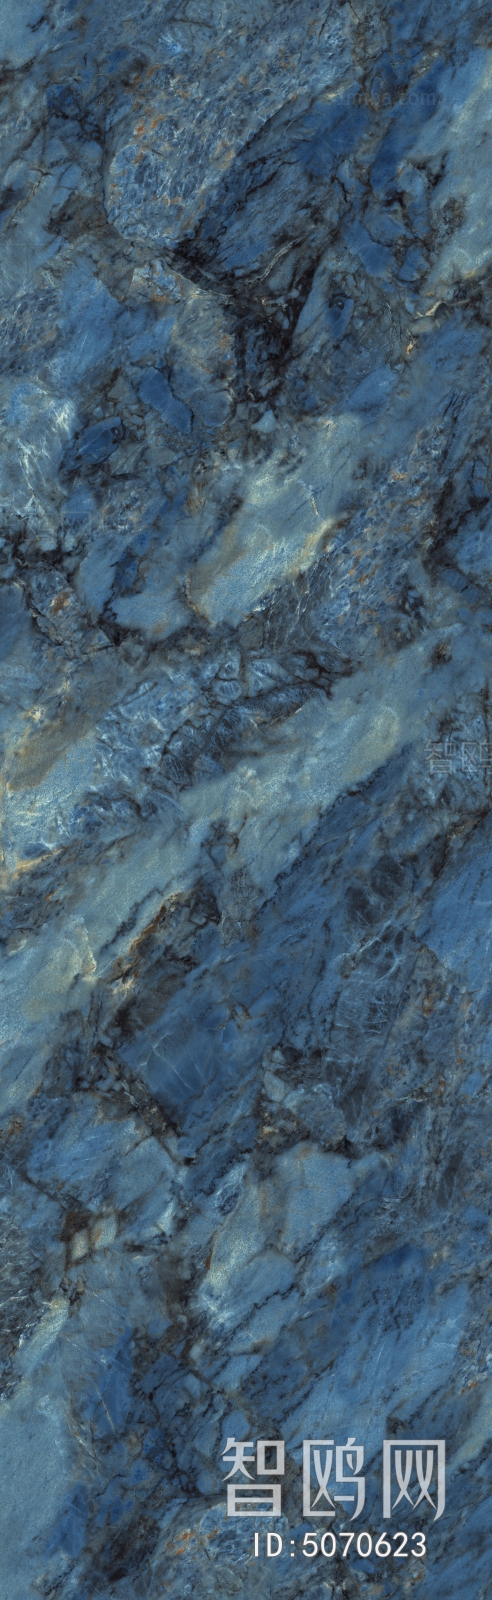 现代玻利维亚·蓝大理石瓷砖